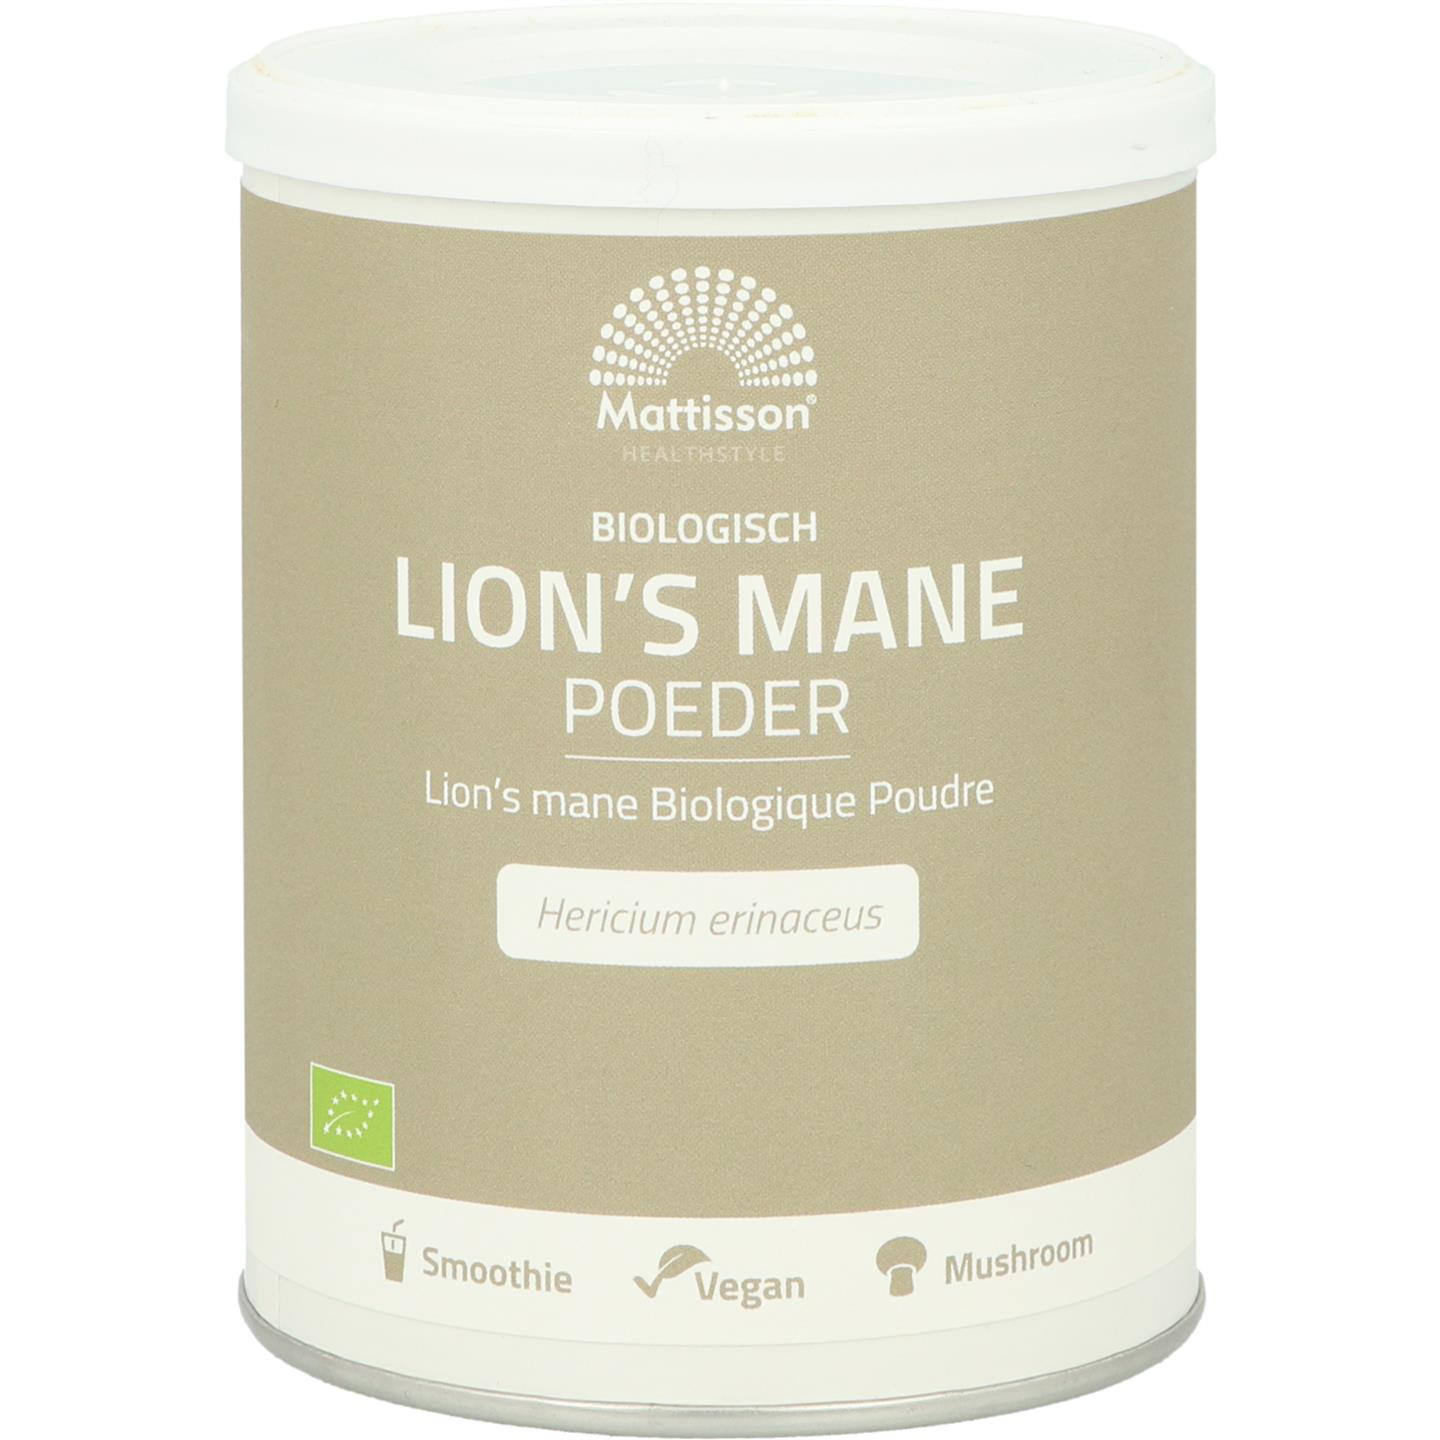 Lion's Mane poeder